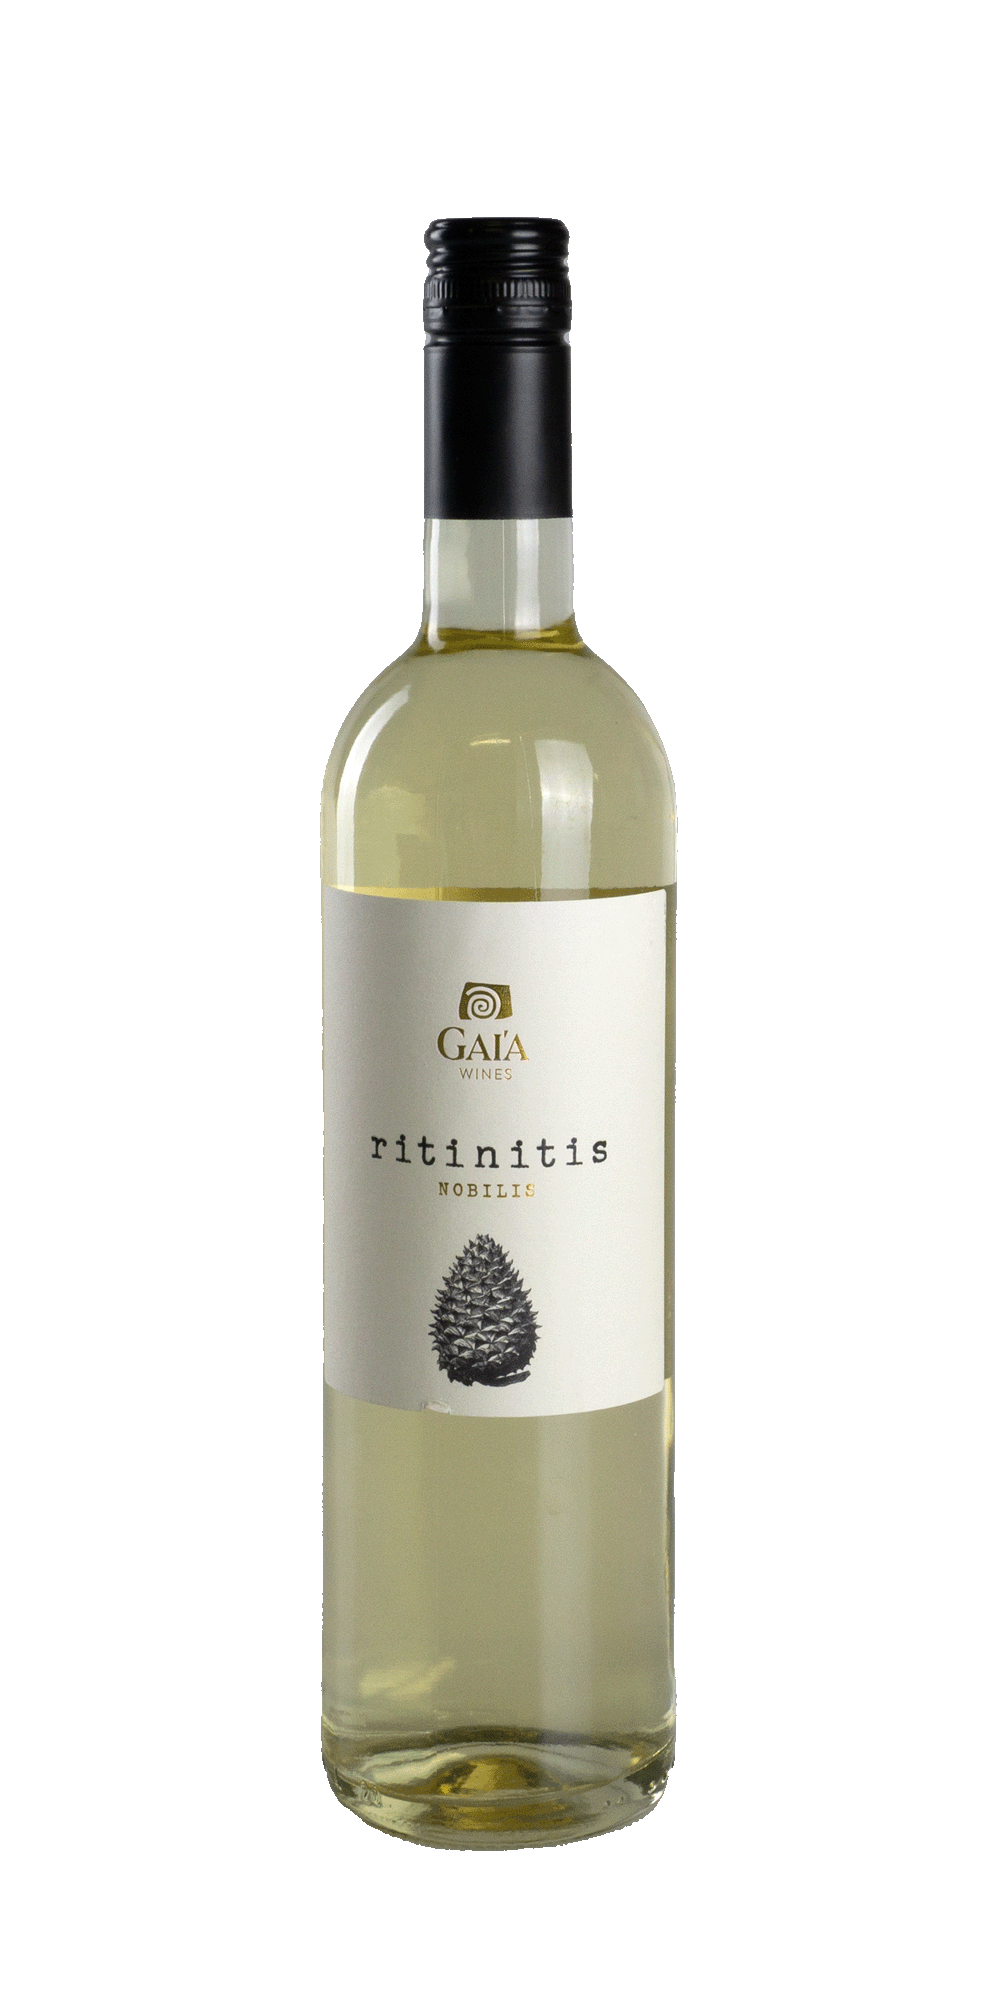 Ritinitis Nobilis Retsina - Gaia Wines